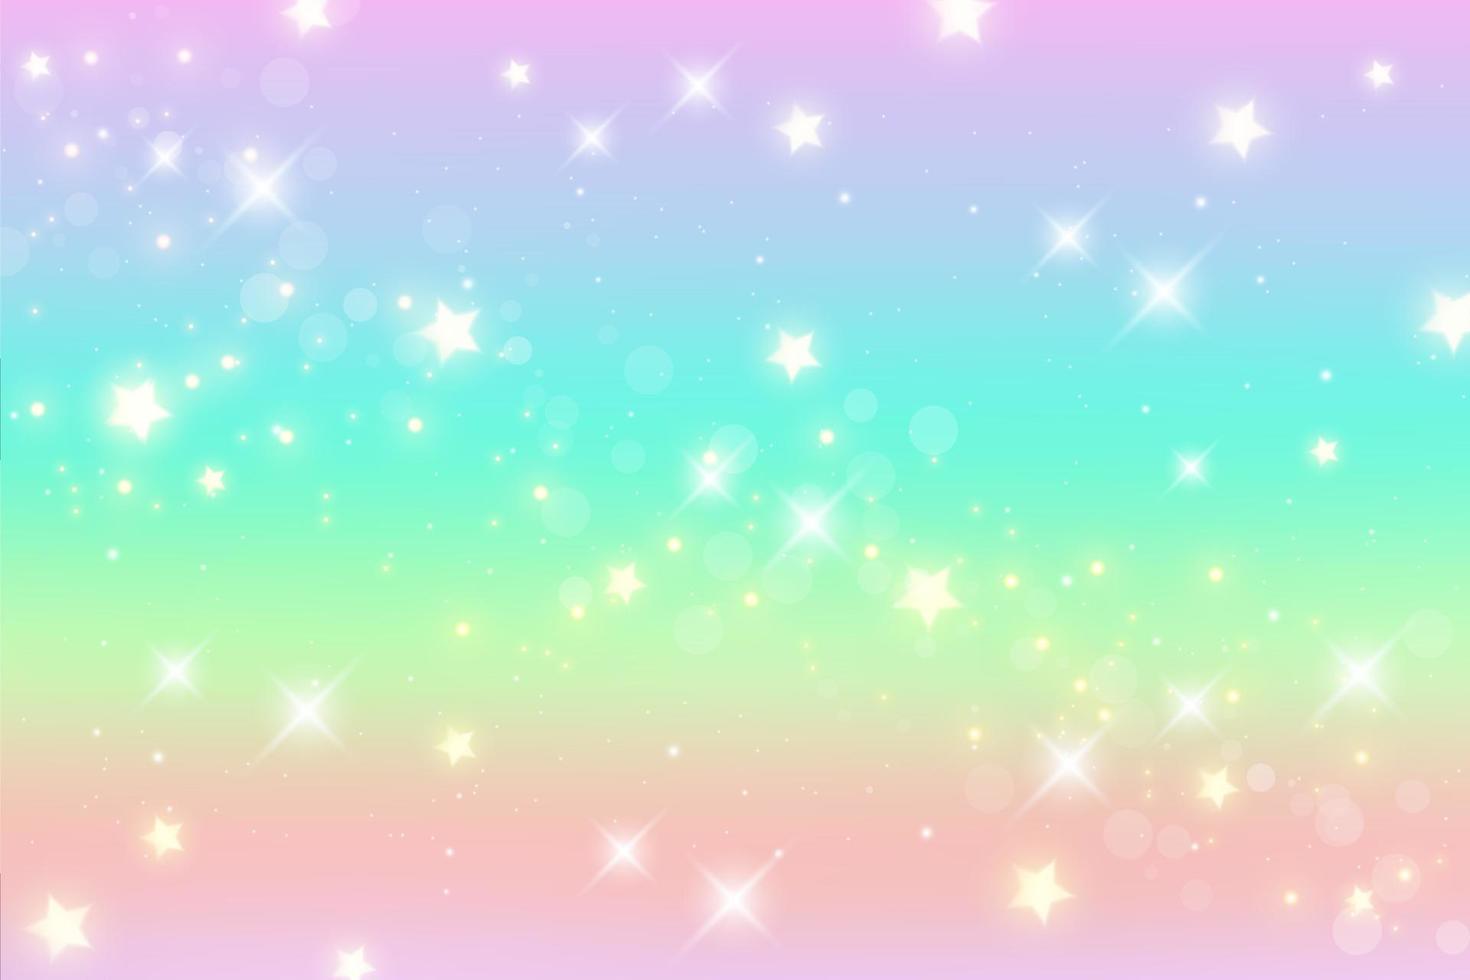 regenboog fantasie achtergrond. holografische illustratie in pastelkleuren. leuke cartoon girly behang. heldere veelkleurige hemel met sterren. vector. vector